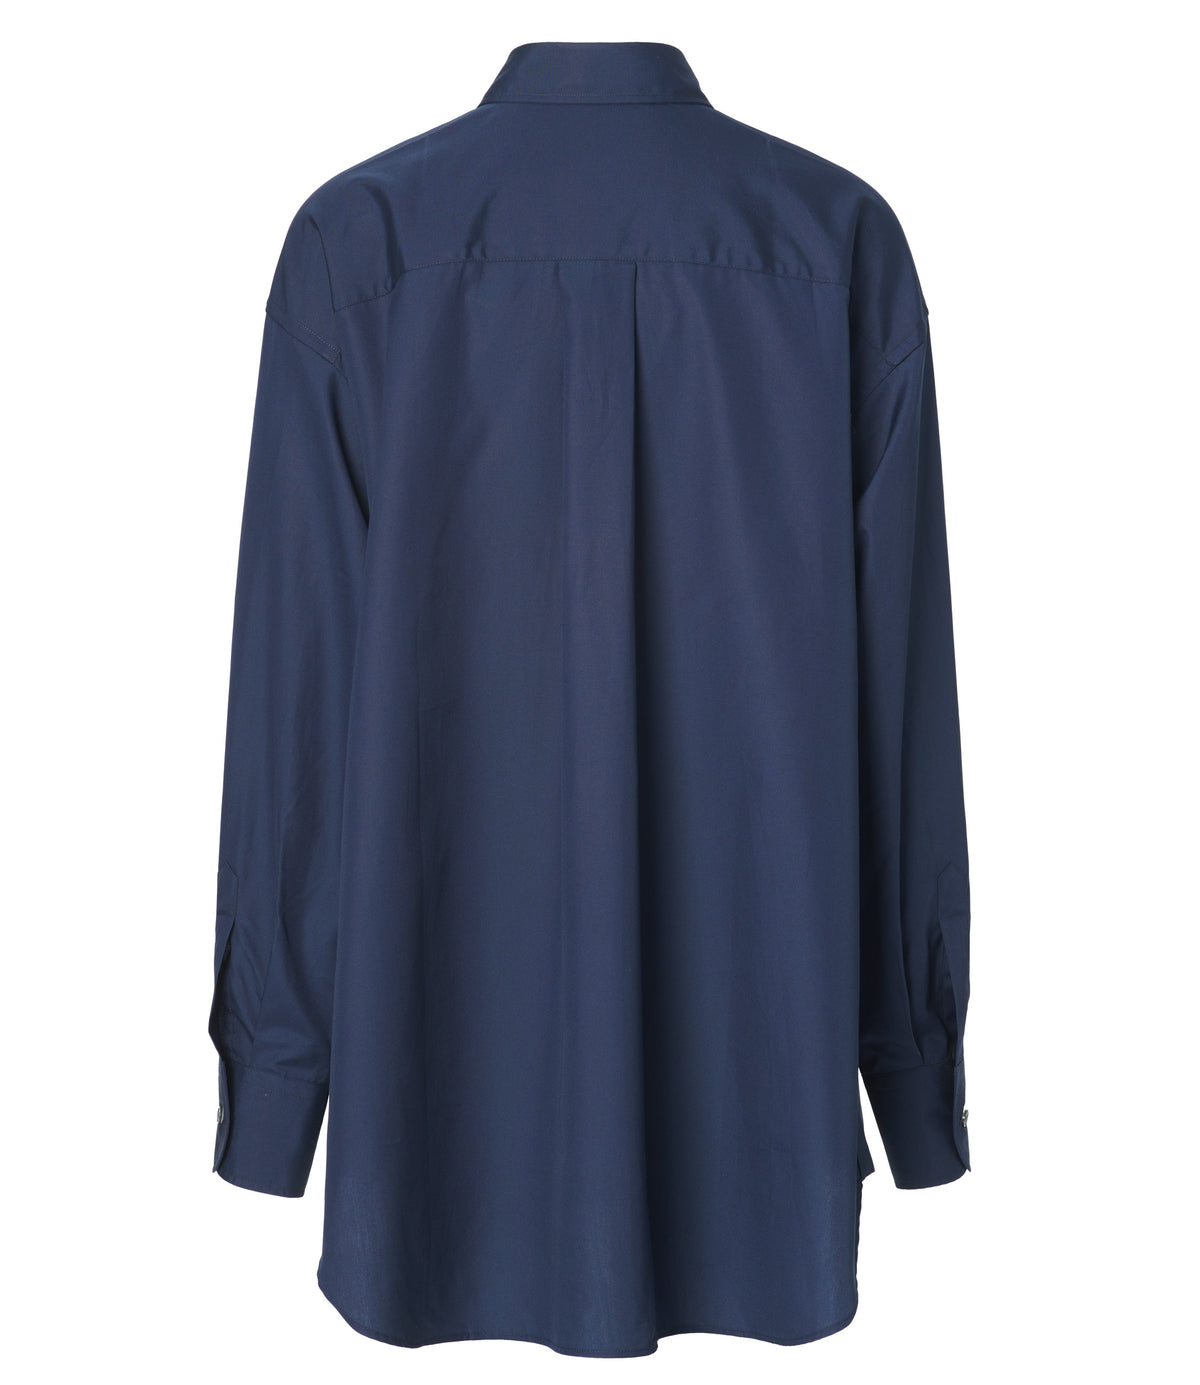 Jean Maroe - Bluse mit Knopfleiste aus Baumwolle in dunkelblau